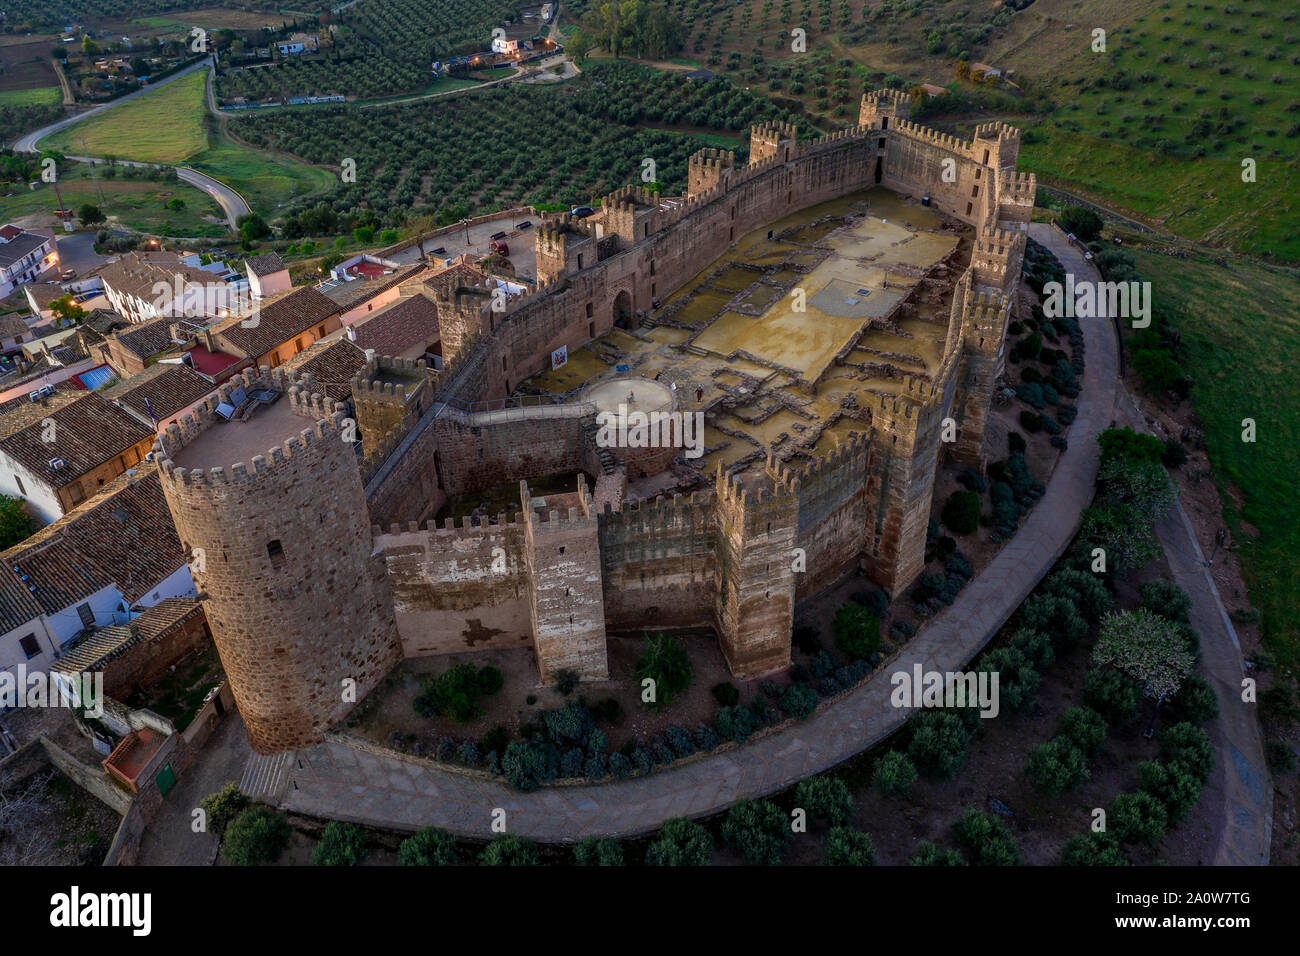 Castillo de Bury Al-Hammam in Banos de la Encina La Mancha province Spain old medieval castle with 14 towers from the air panorama Stock Photo